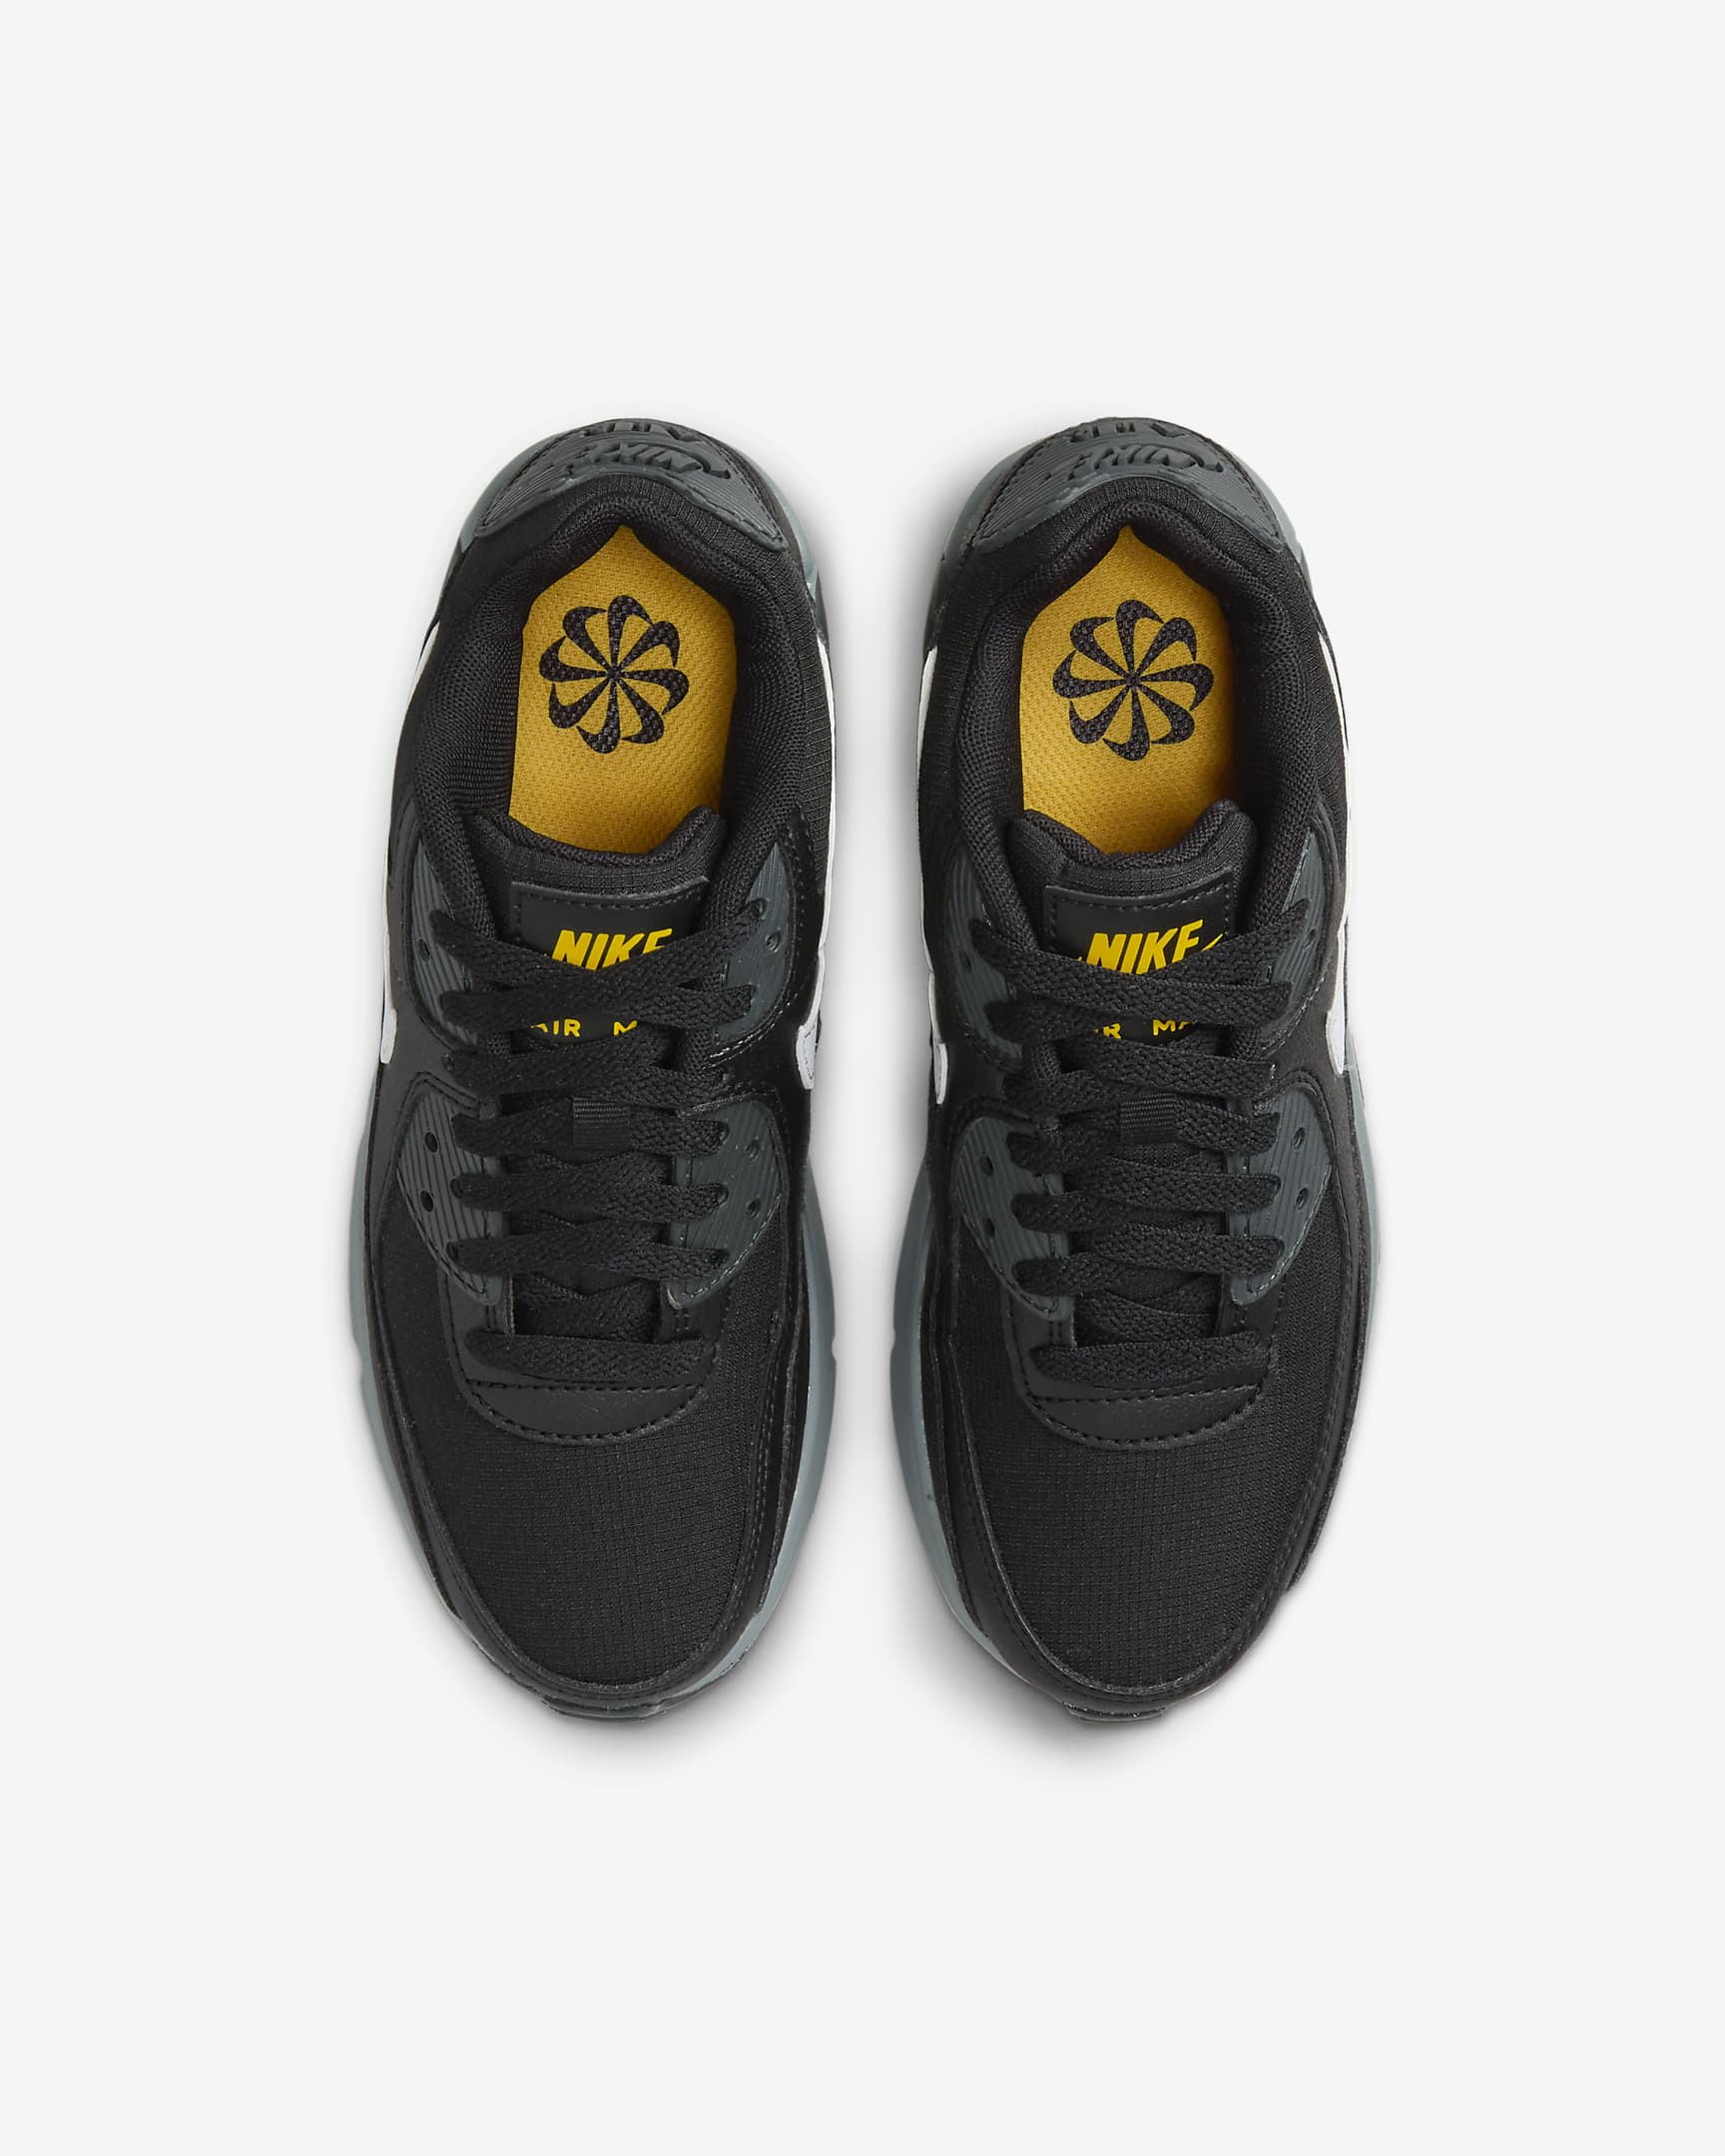 Nike Air Max 90 Schuhe für ältere Kinder - Schwarz/University Gold/Dark Smoke Grey/Weiß